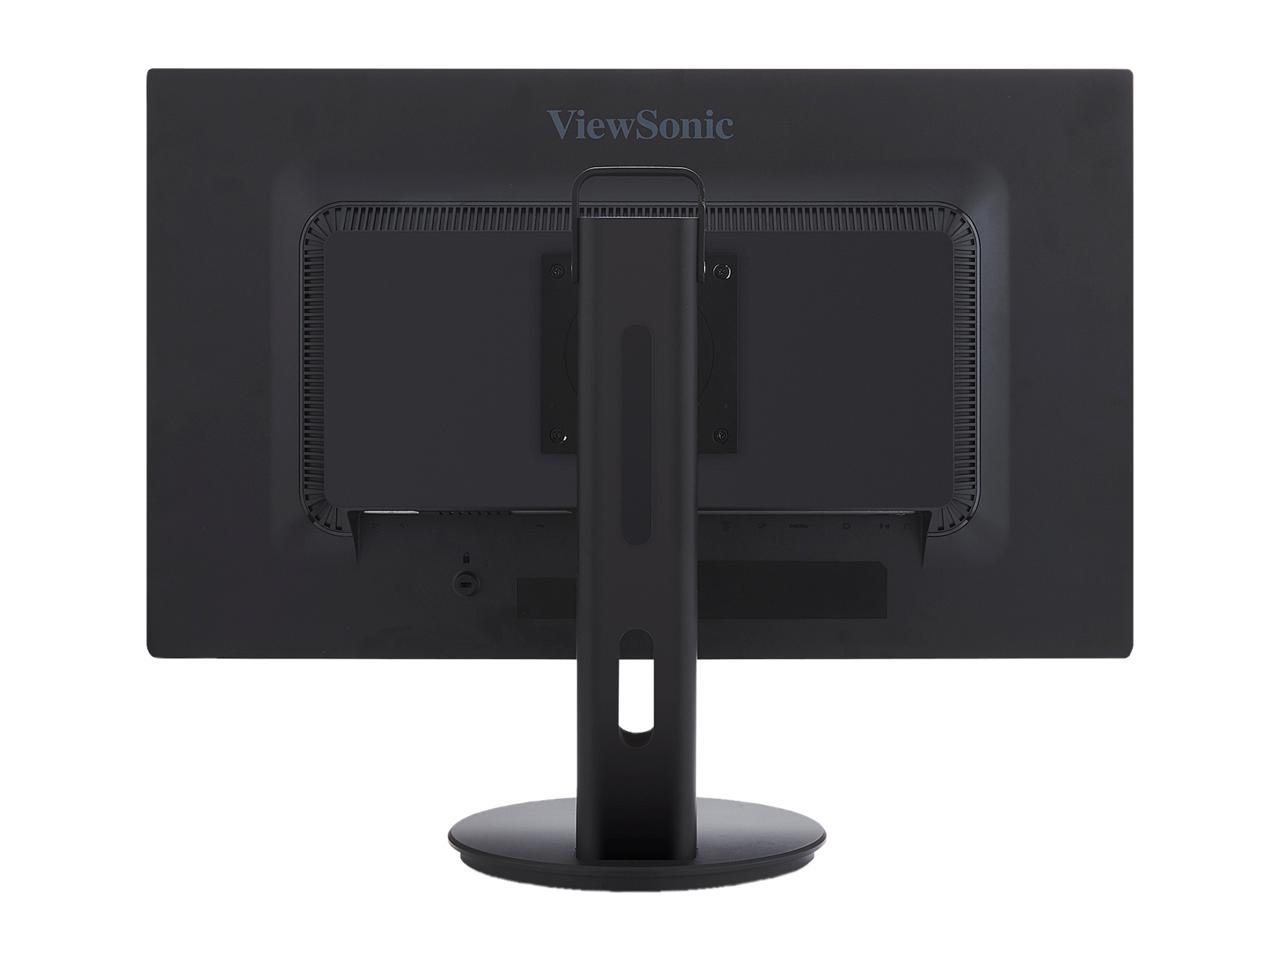 ViewSonic VG2753 27" Full HD 1920 x 1080 7ms (GTG W/OD) VGA Mini-DisplayPort HDMI DisplayPort Built-in Speakers USB 3.0 Hub Anti-Glare Backlit LED IPS Monitor